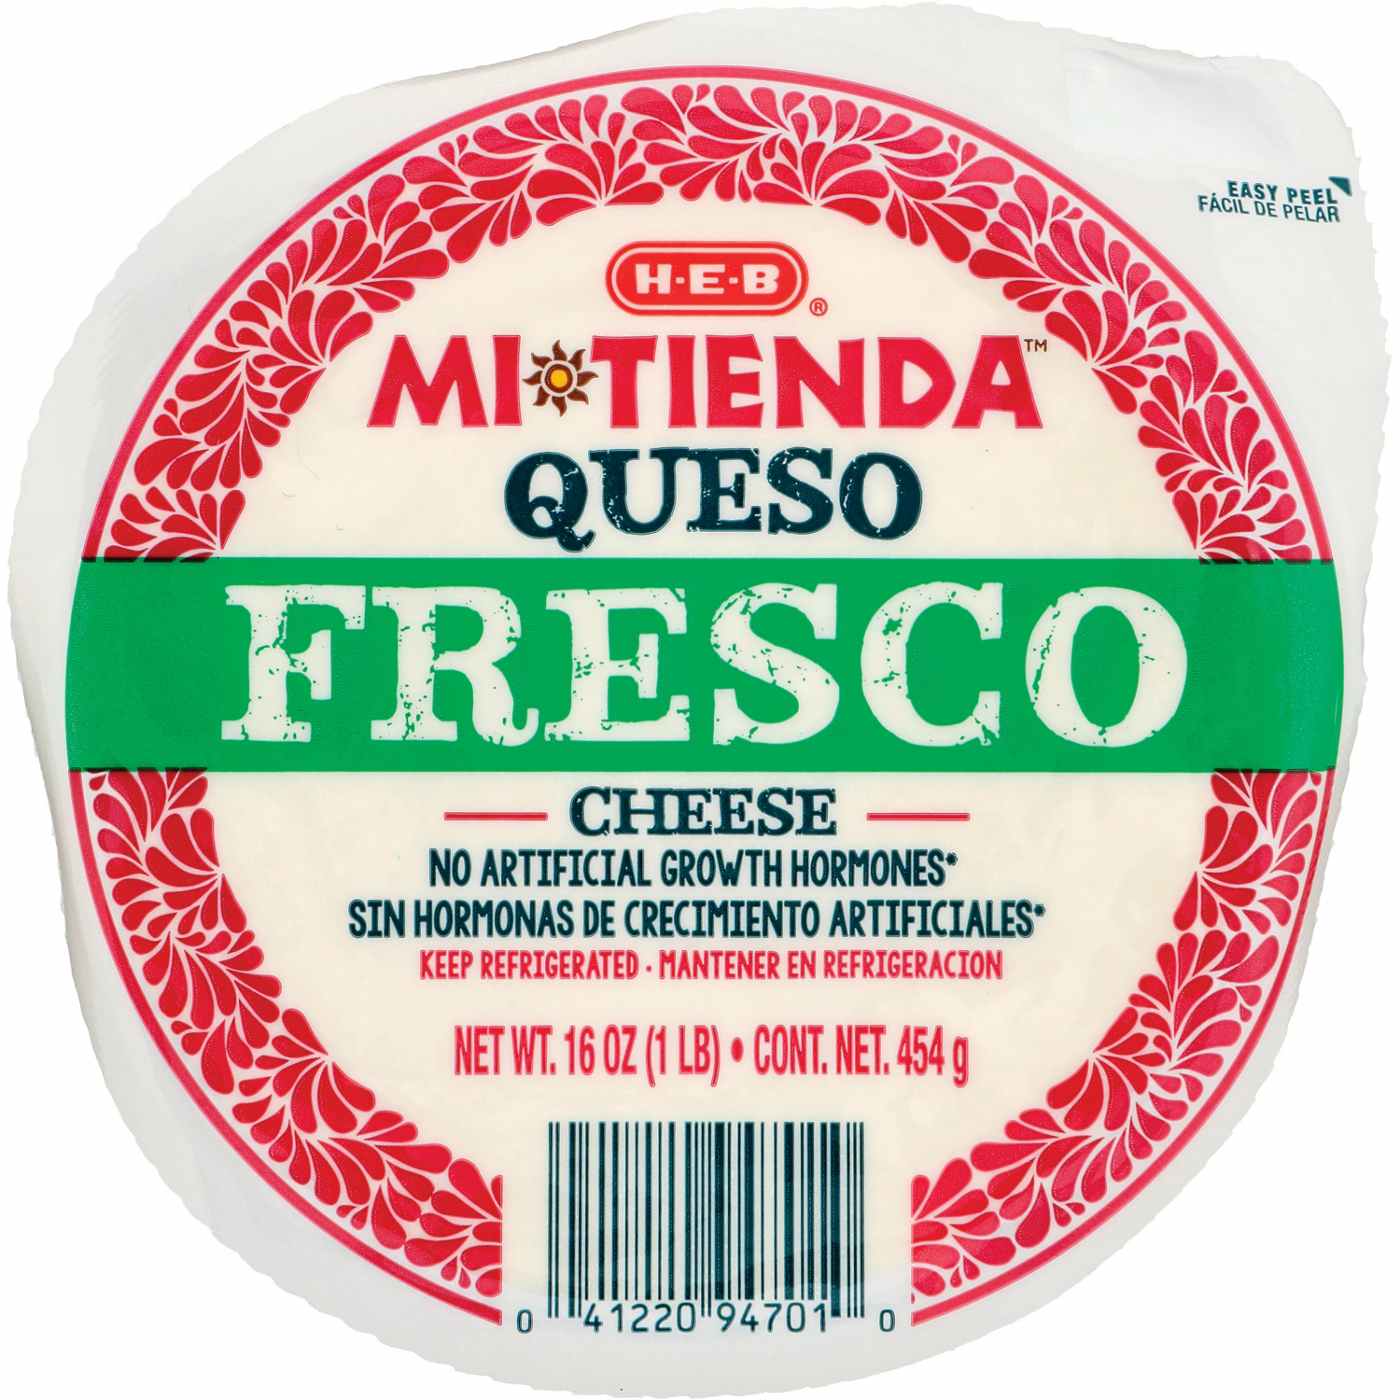 H-E-B Mi Tienda Queso Fresco Cheese; image 1 of 3